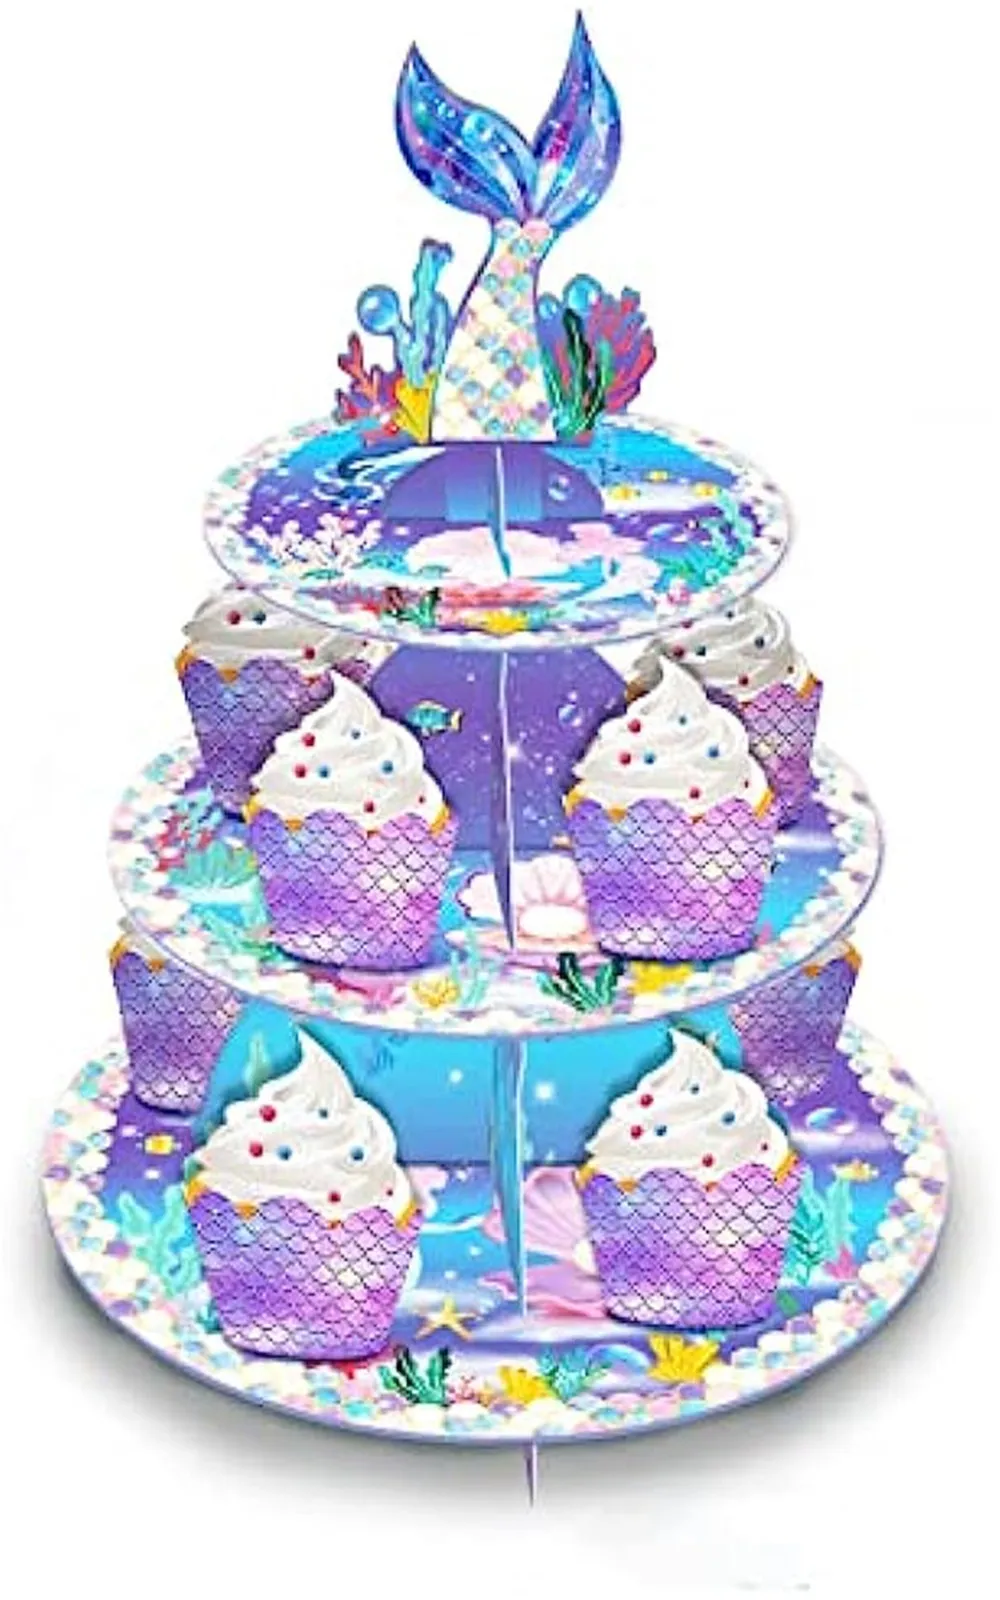 Hermoso pastel en el cumpleaños de la chica durante 18 años